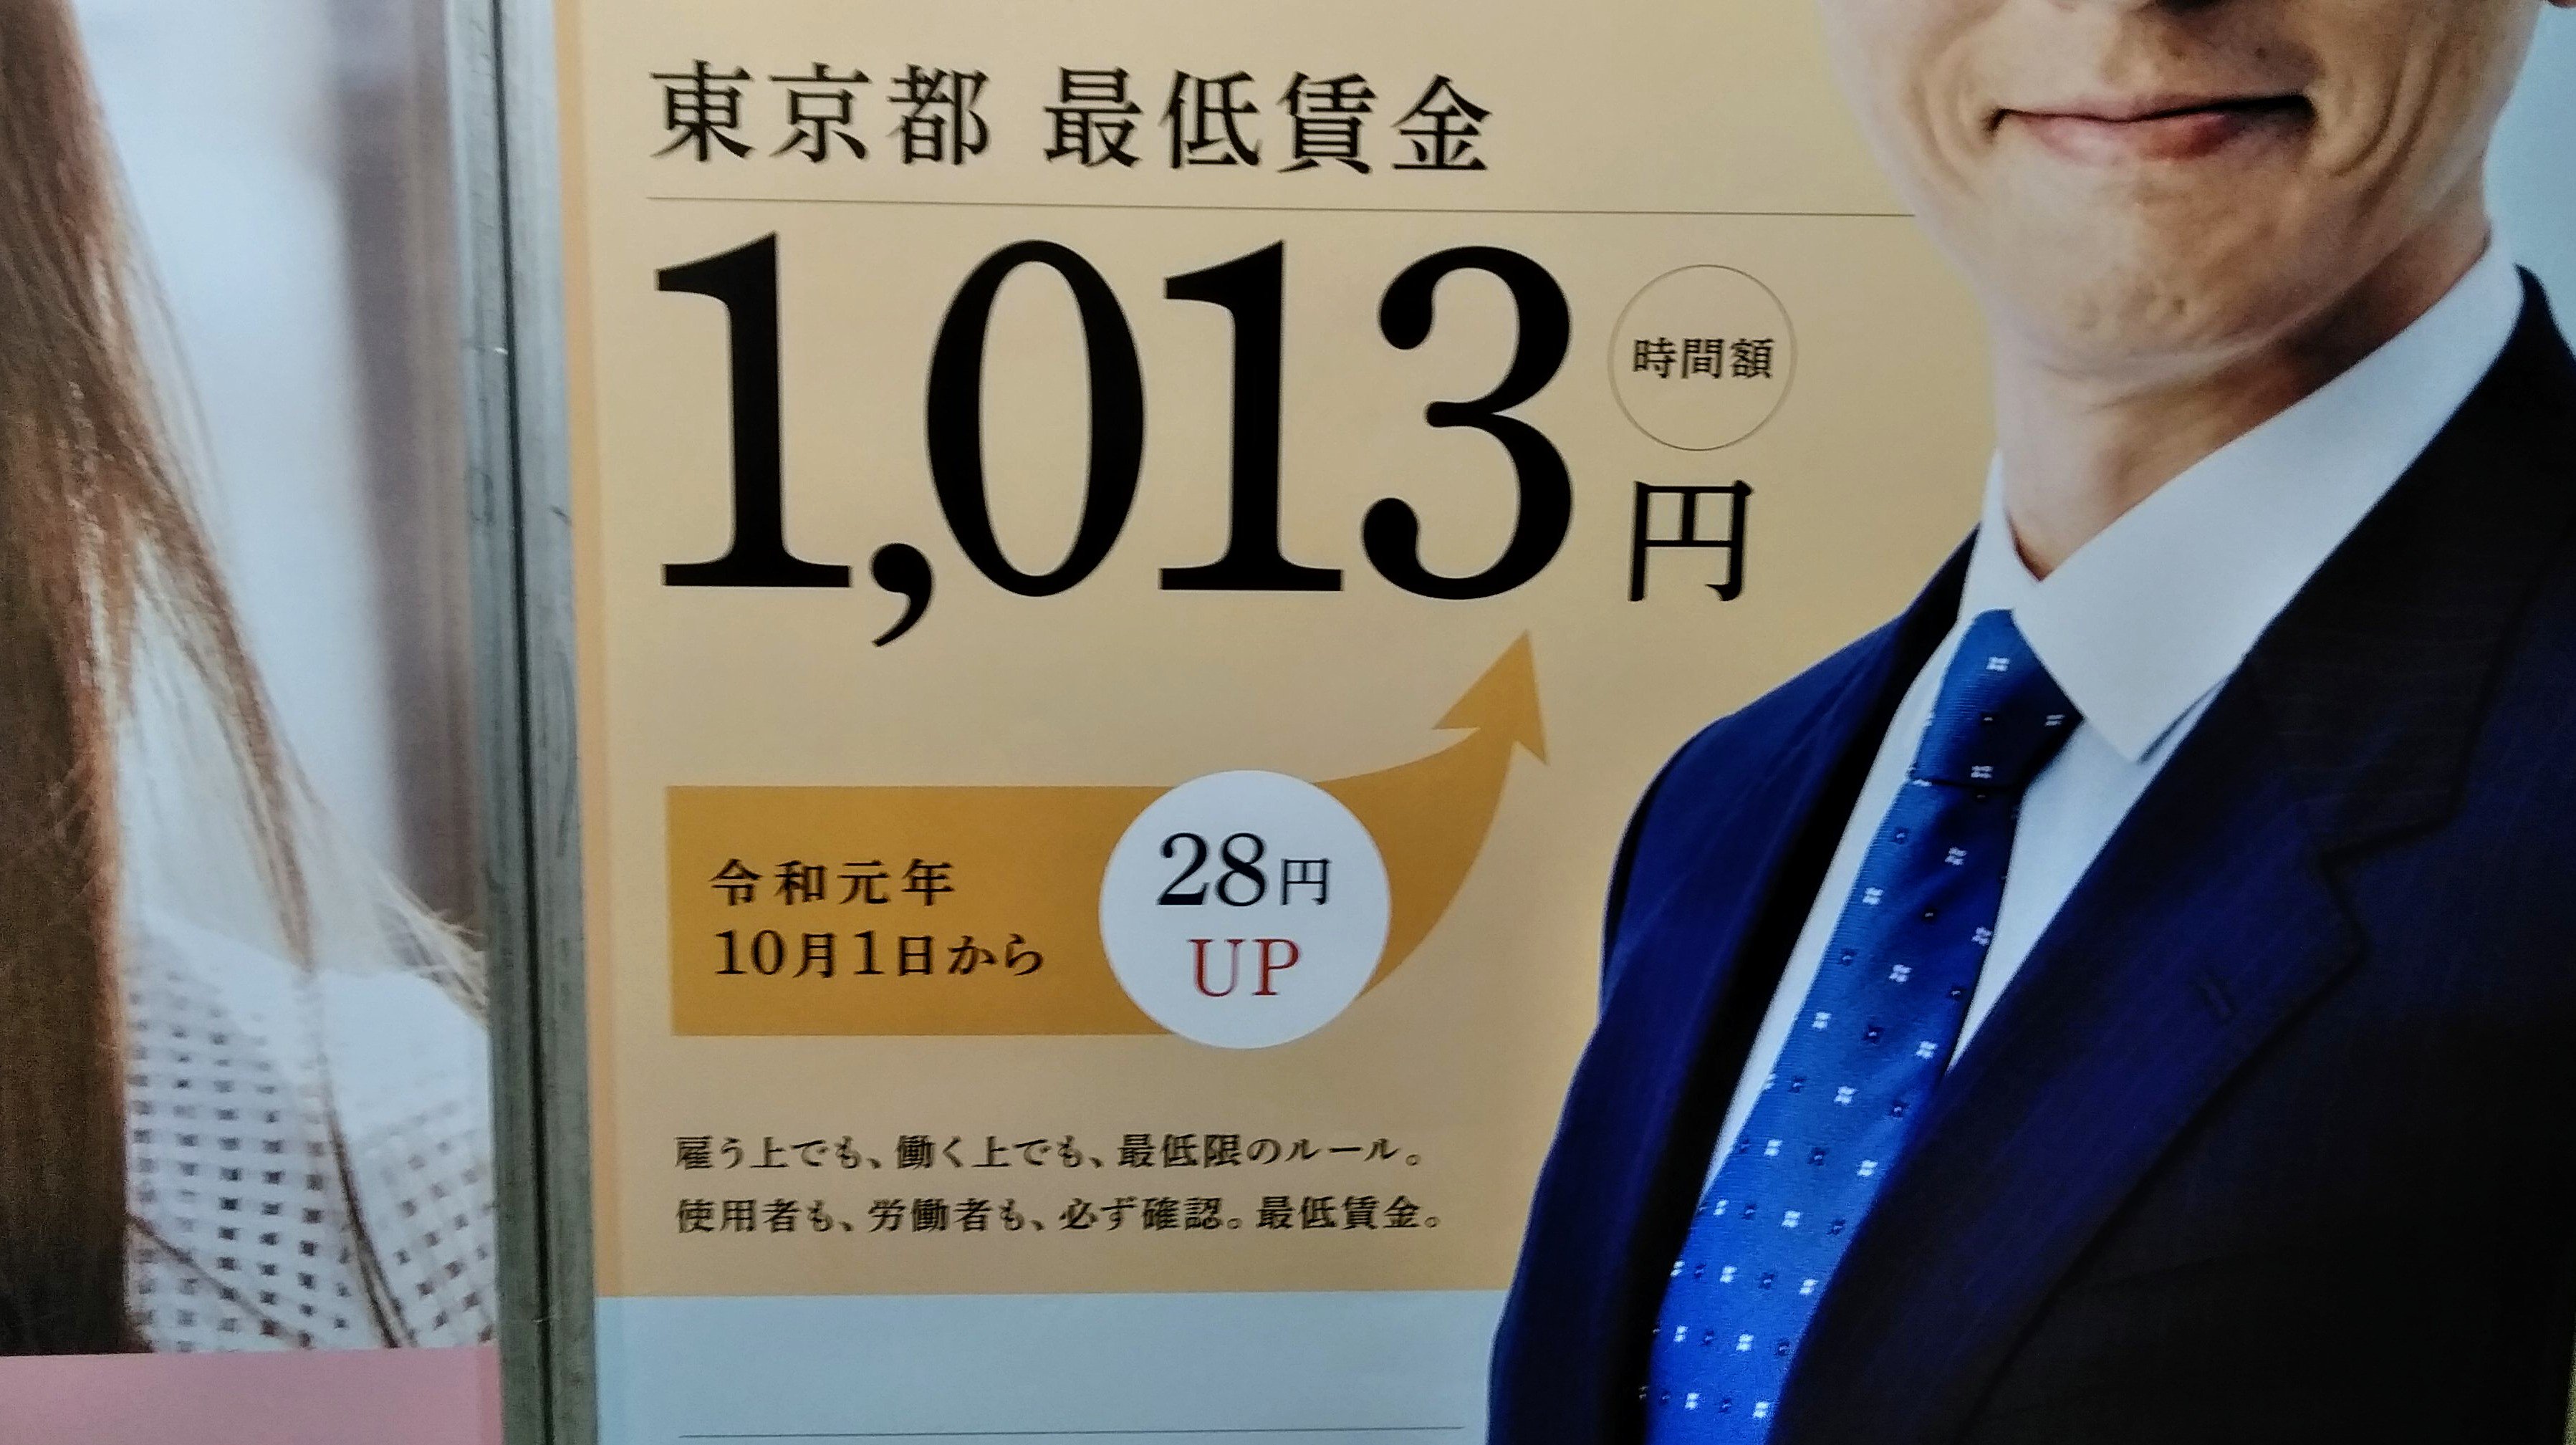 1013東京だけ凄い 昔は最低賃金の人は少なかった気が もはや 家賃払って1 013円で人を雇える景気ではない最高賃金な気も 今日から1 19 10 01 神楽坂ねこの郵便局というなまえのお店